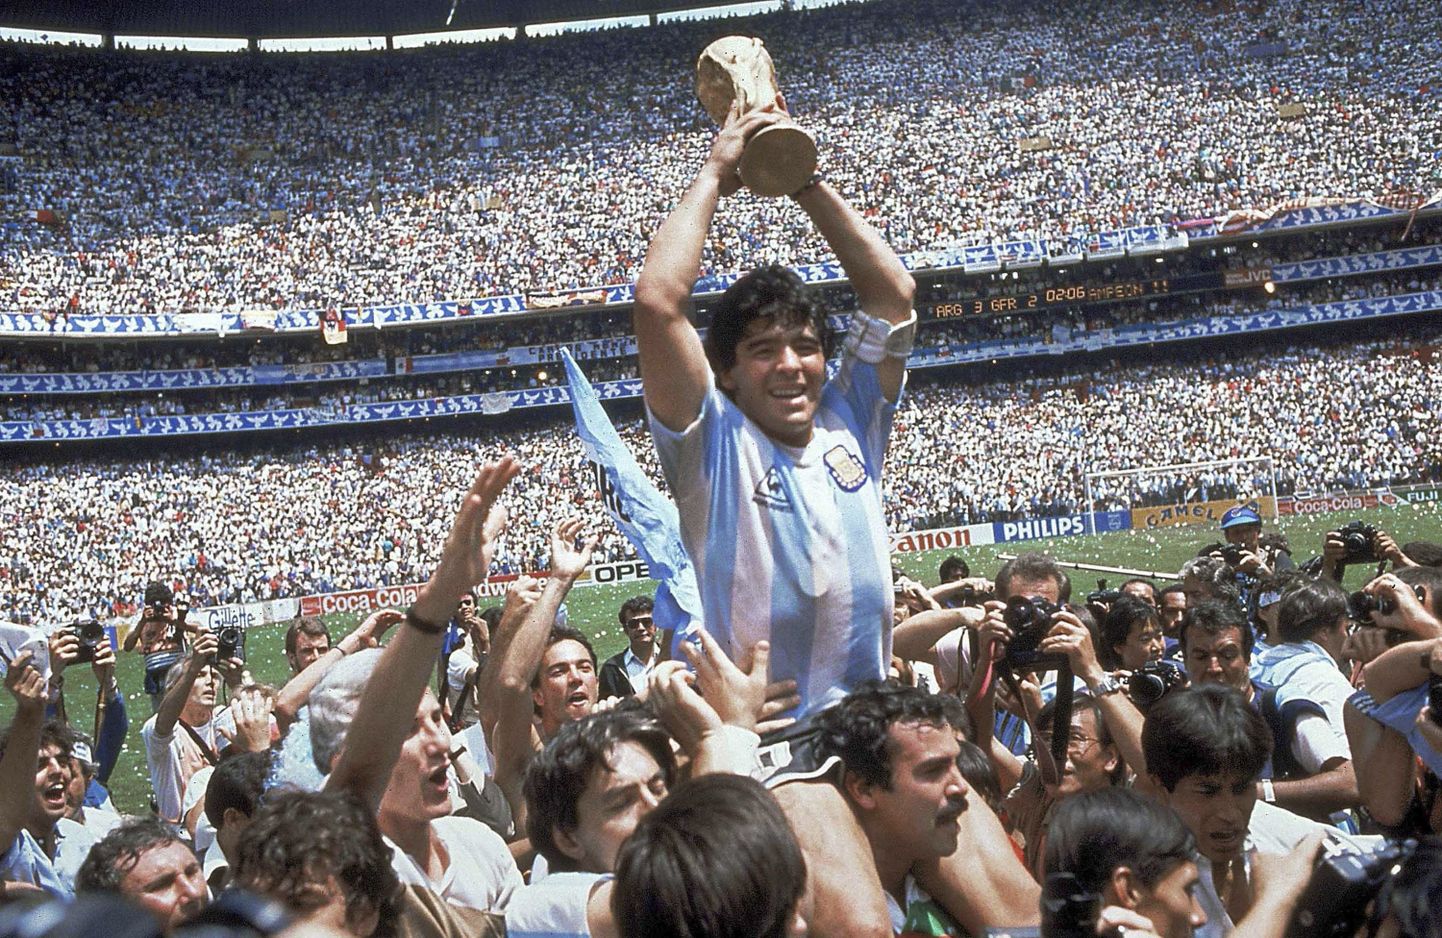 Diego Maradona MM-karikaga pärast 3:2 võitu Lääne-Saksamaa üle 1986. aata MM-finaalis.